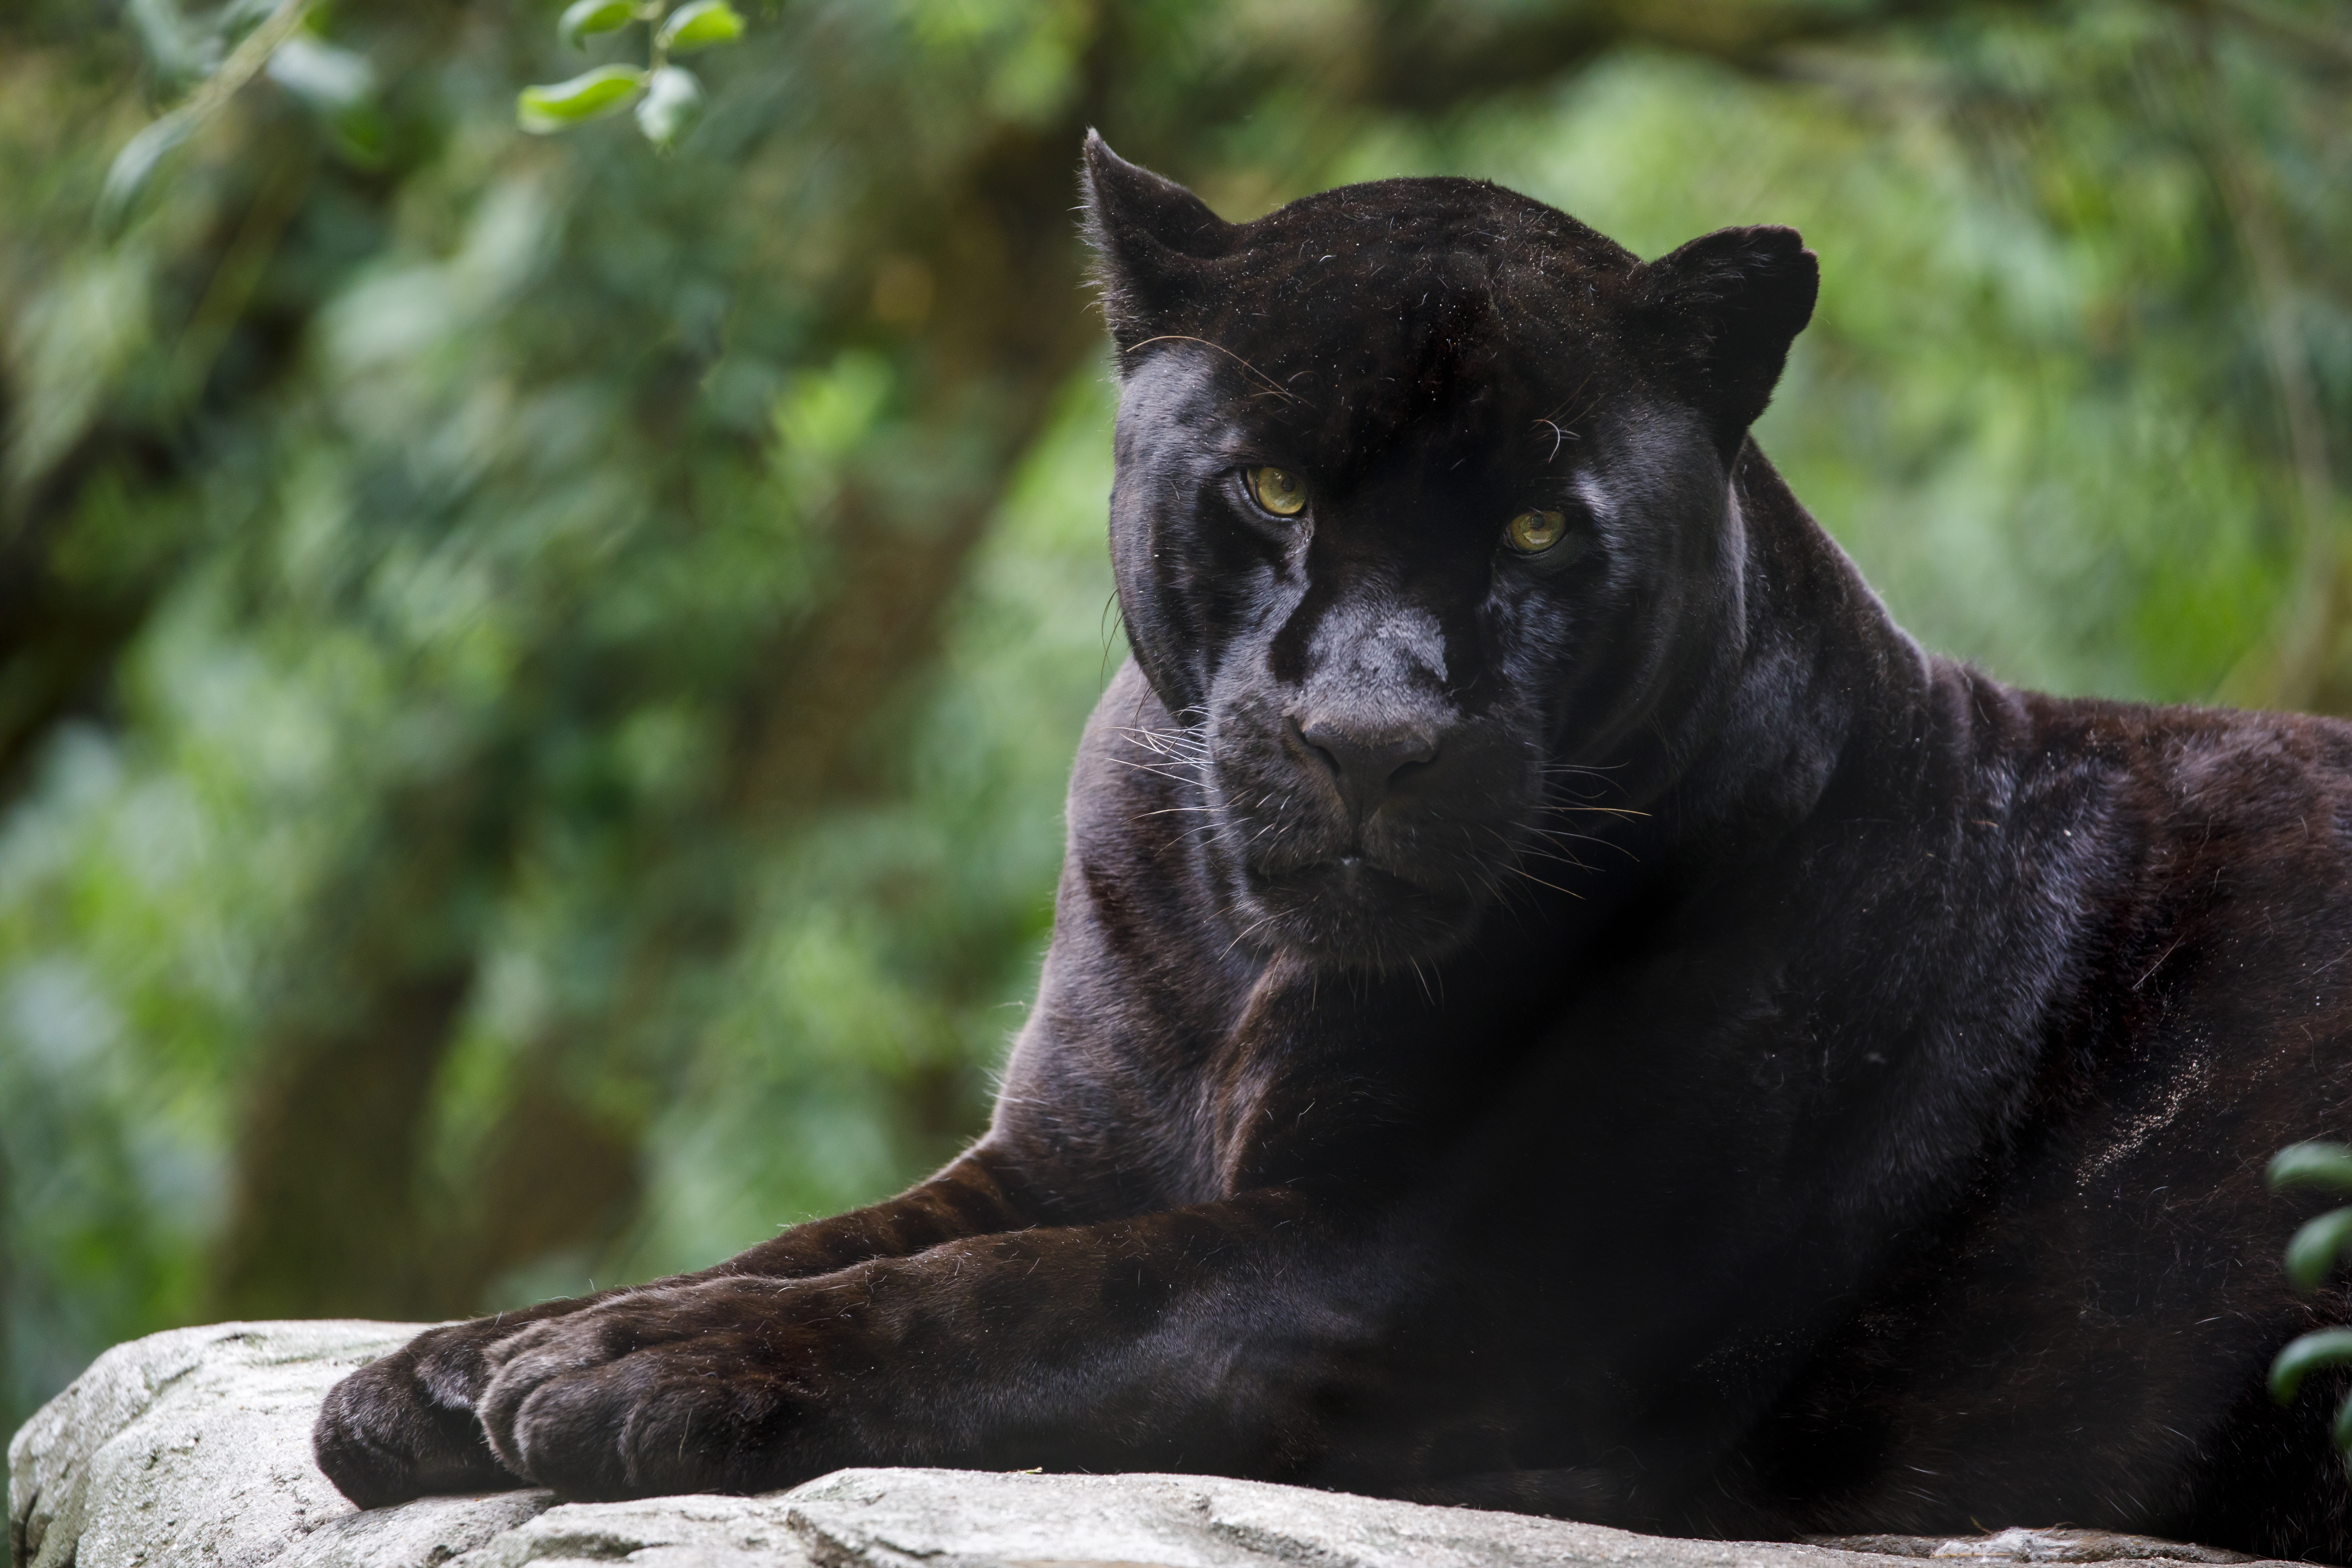 Closeup of a black jaguar. Image Credit: Edwin Butter, Envato Creative Commons.